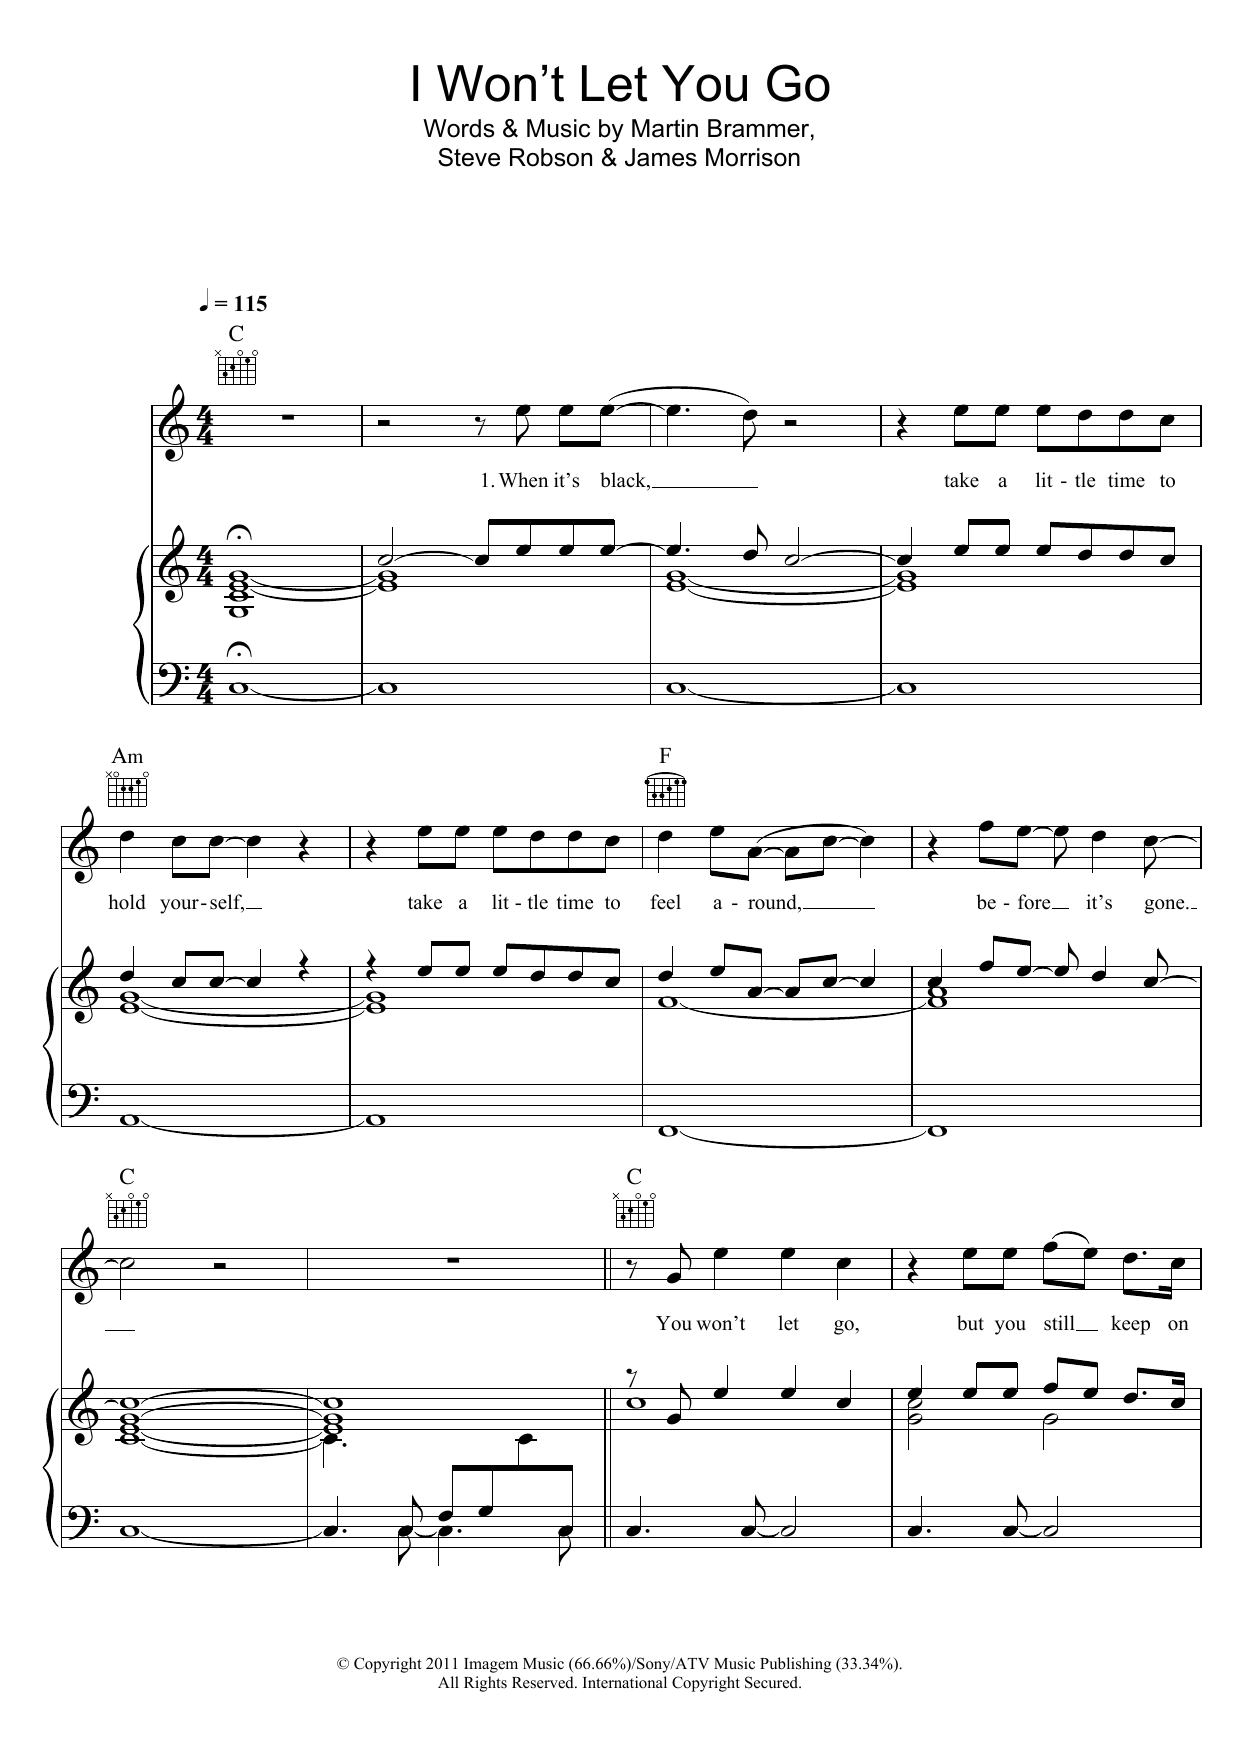 James Morrison I Won't Let You Go Sheet Music Notes & Chords for Lyrics & Chords - Download or Print PDF